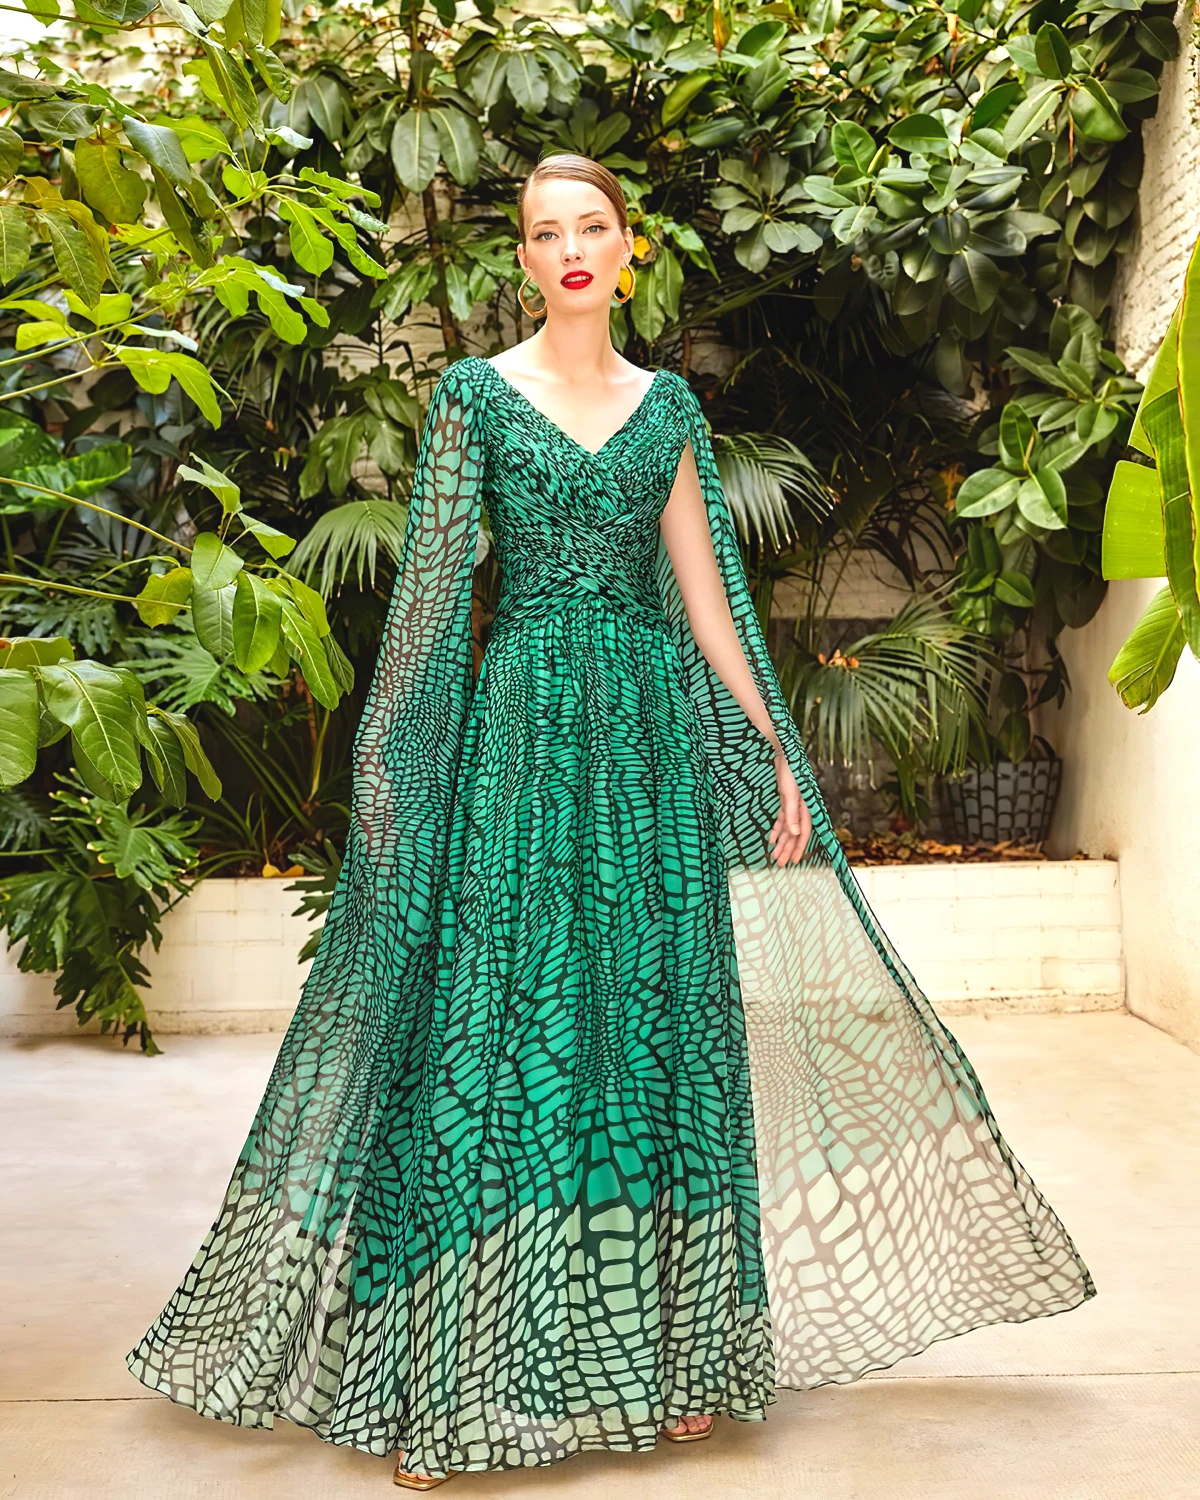 robe originale verte pour invite mariage boheme chic